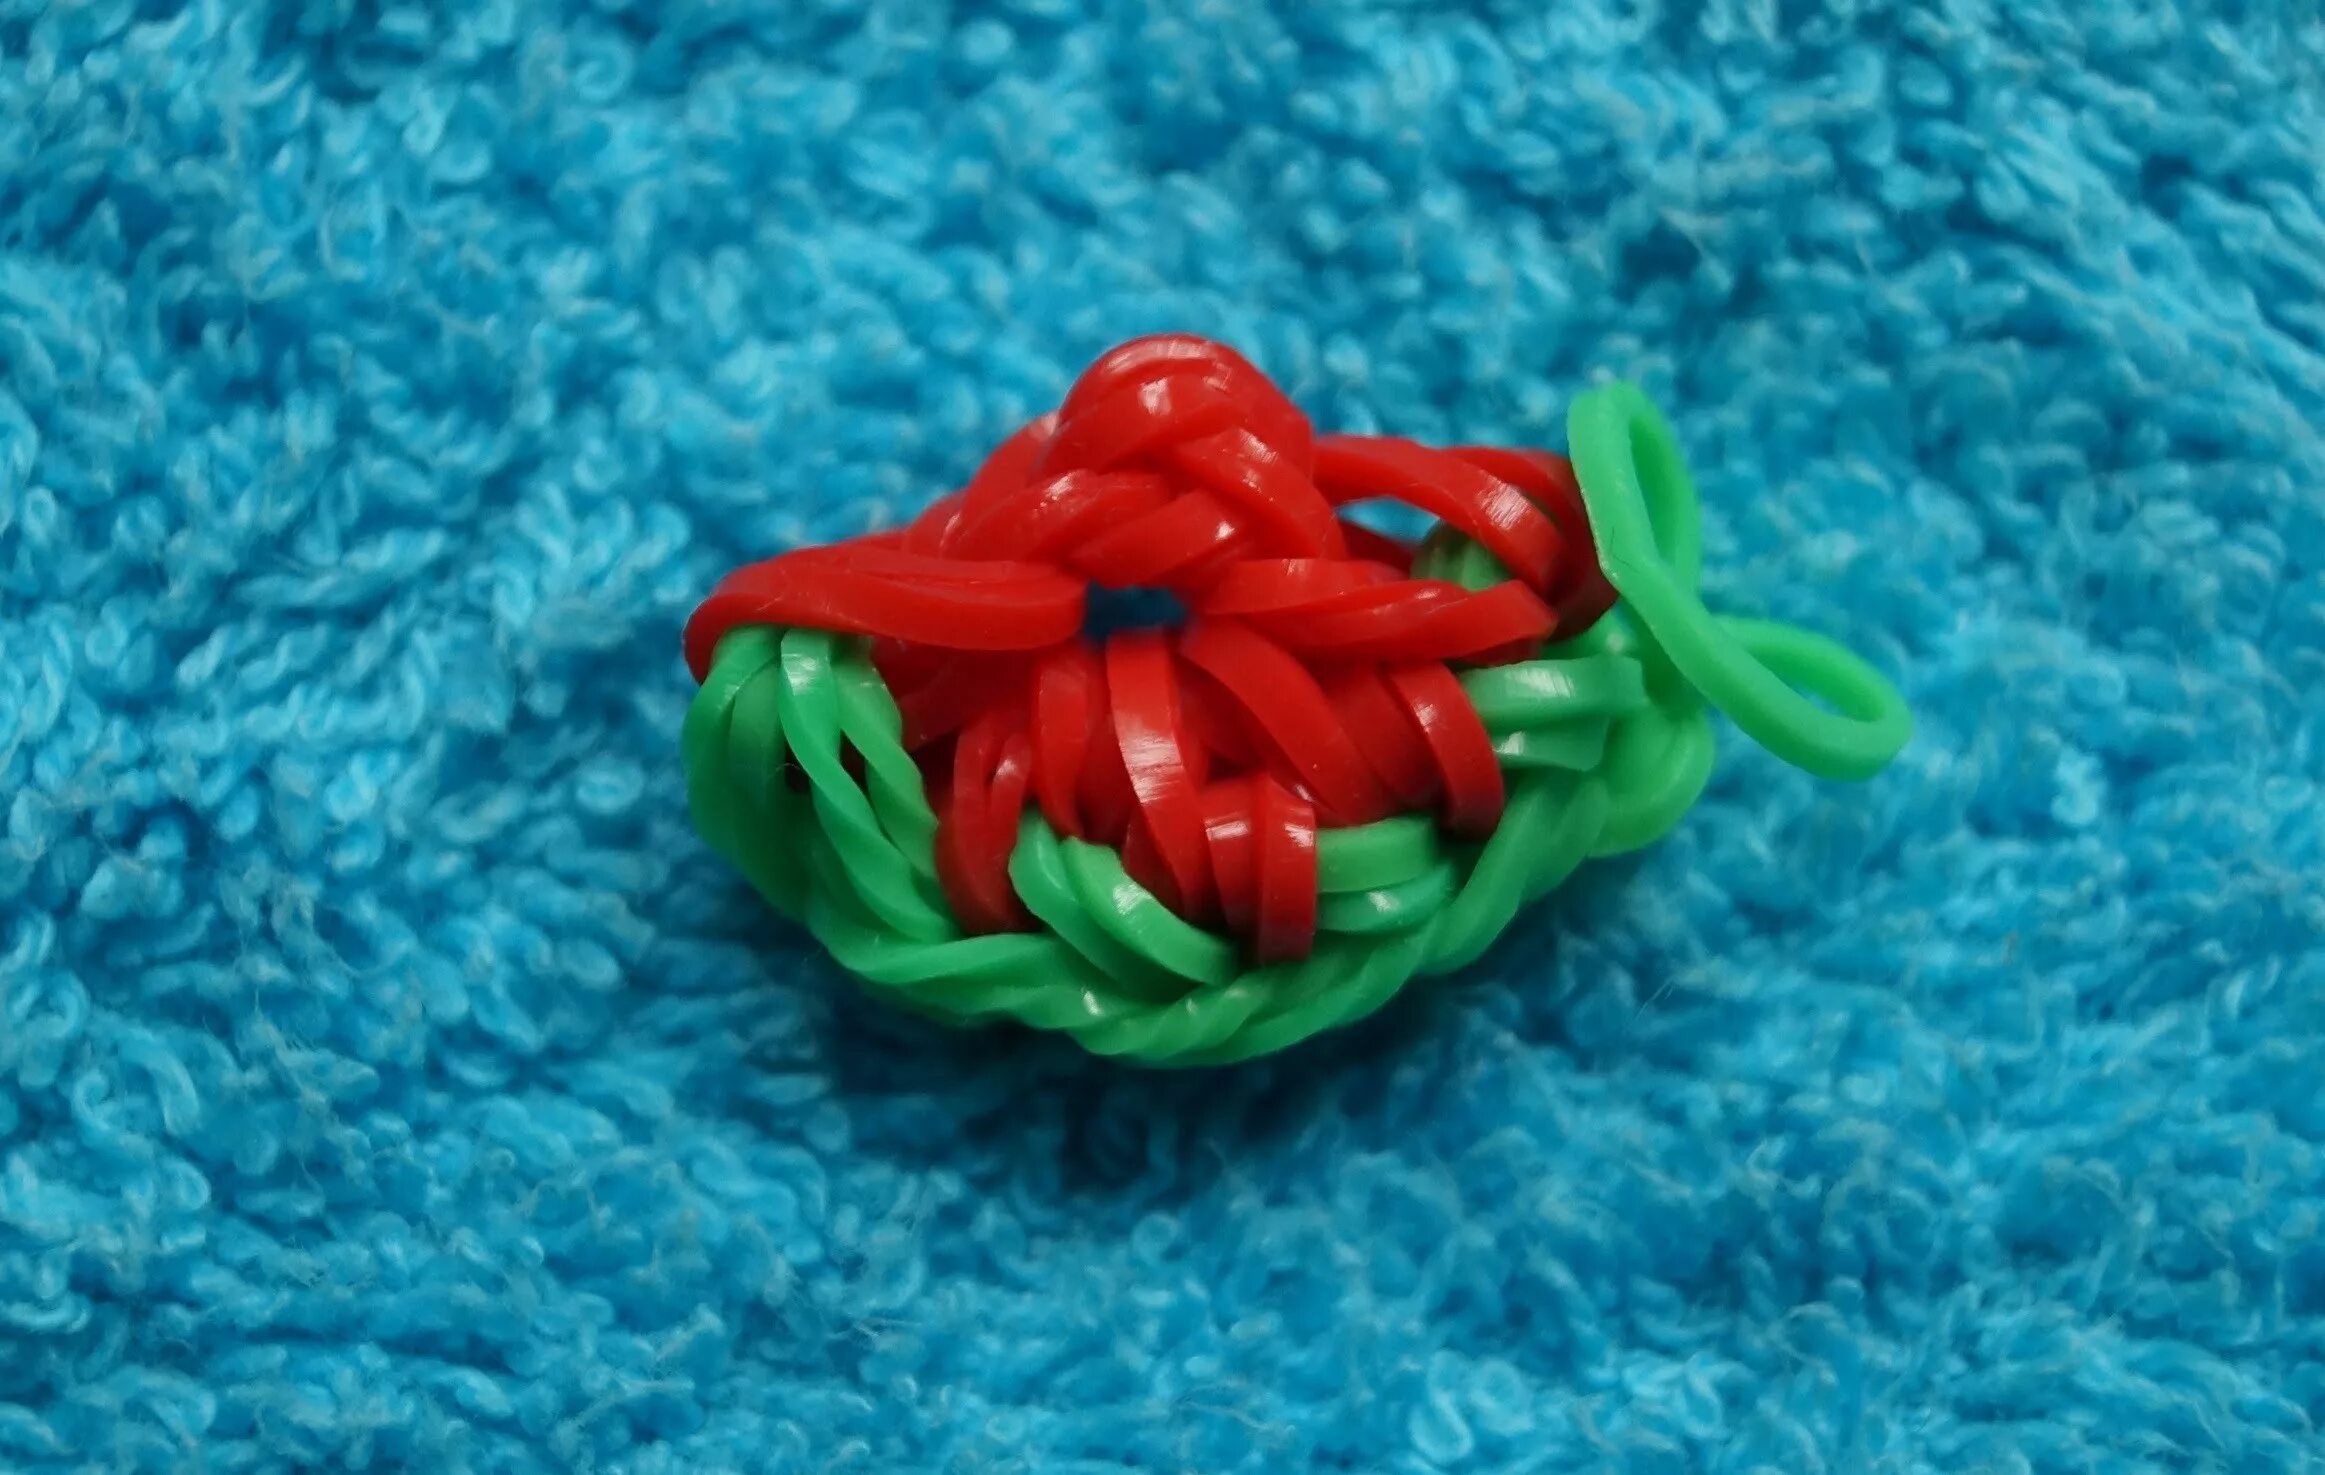 Как плети игрушки из резинок